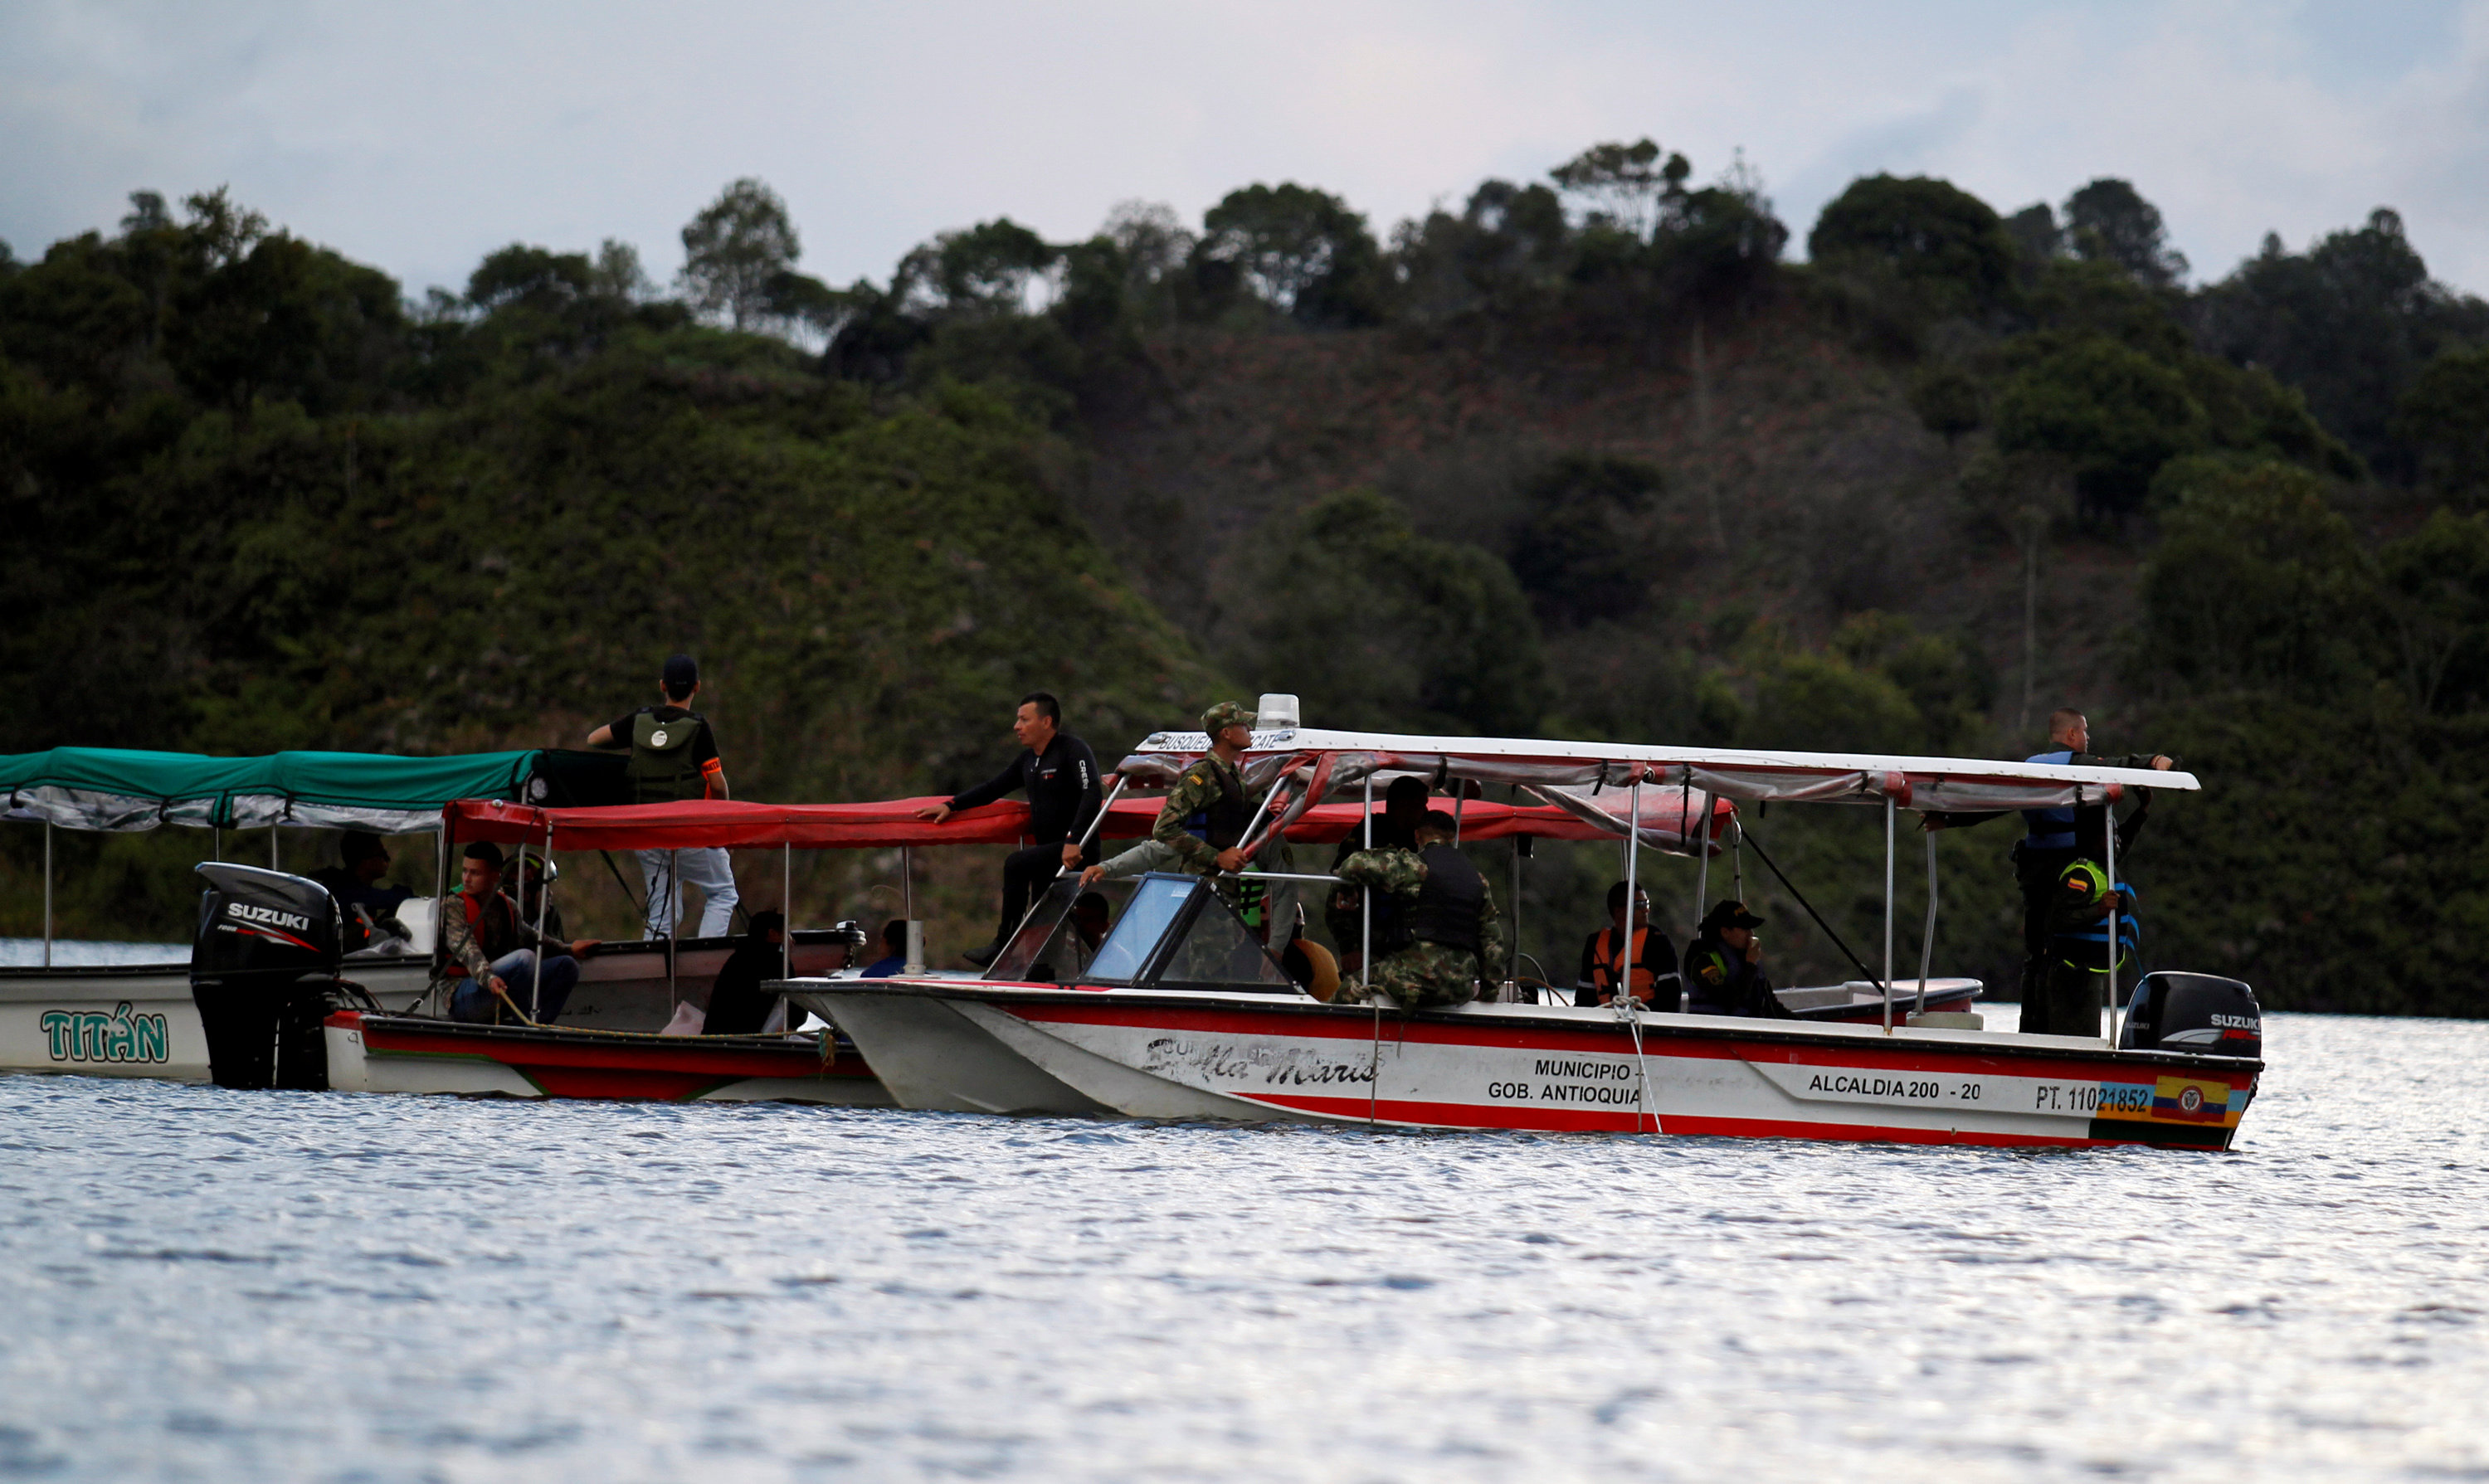 البحث عن ناجين بموقع حادث غرق المركب فى كولومبيا